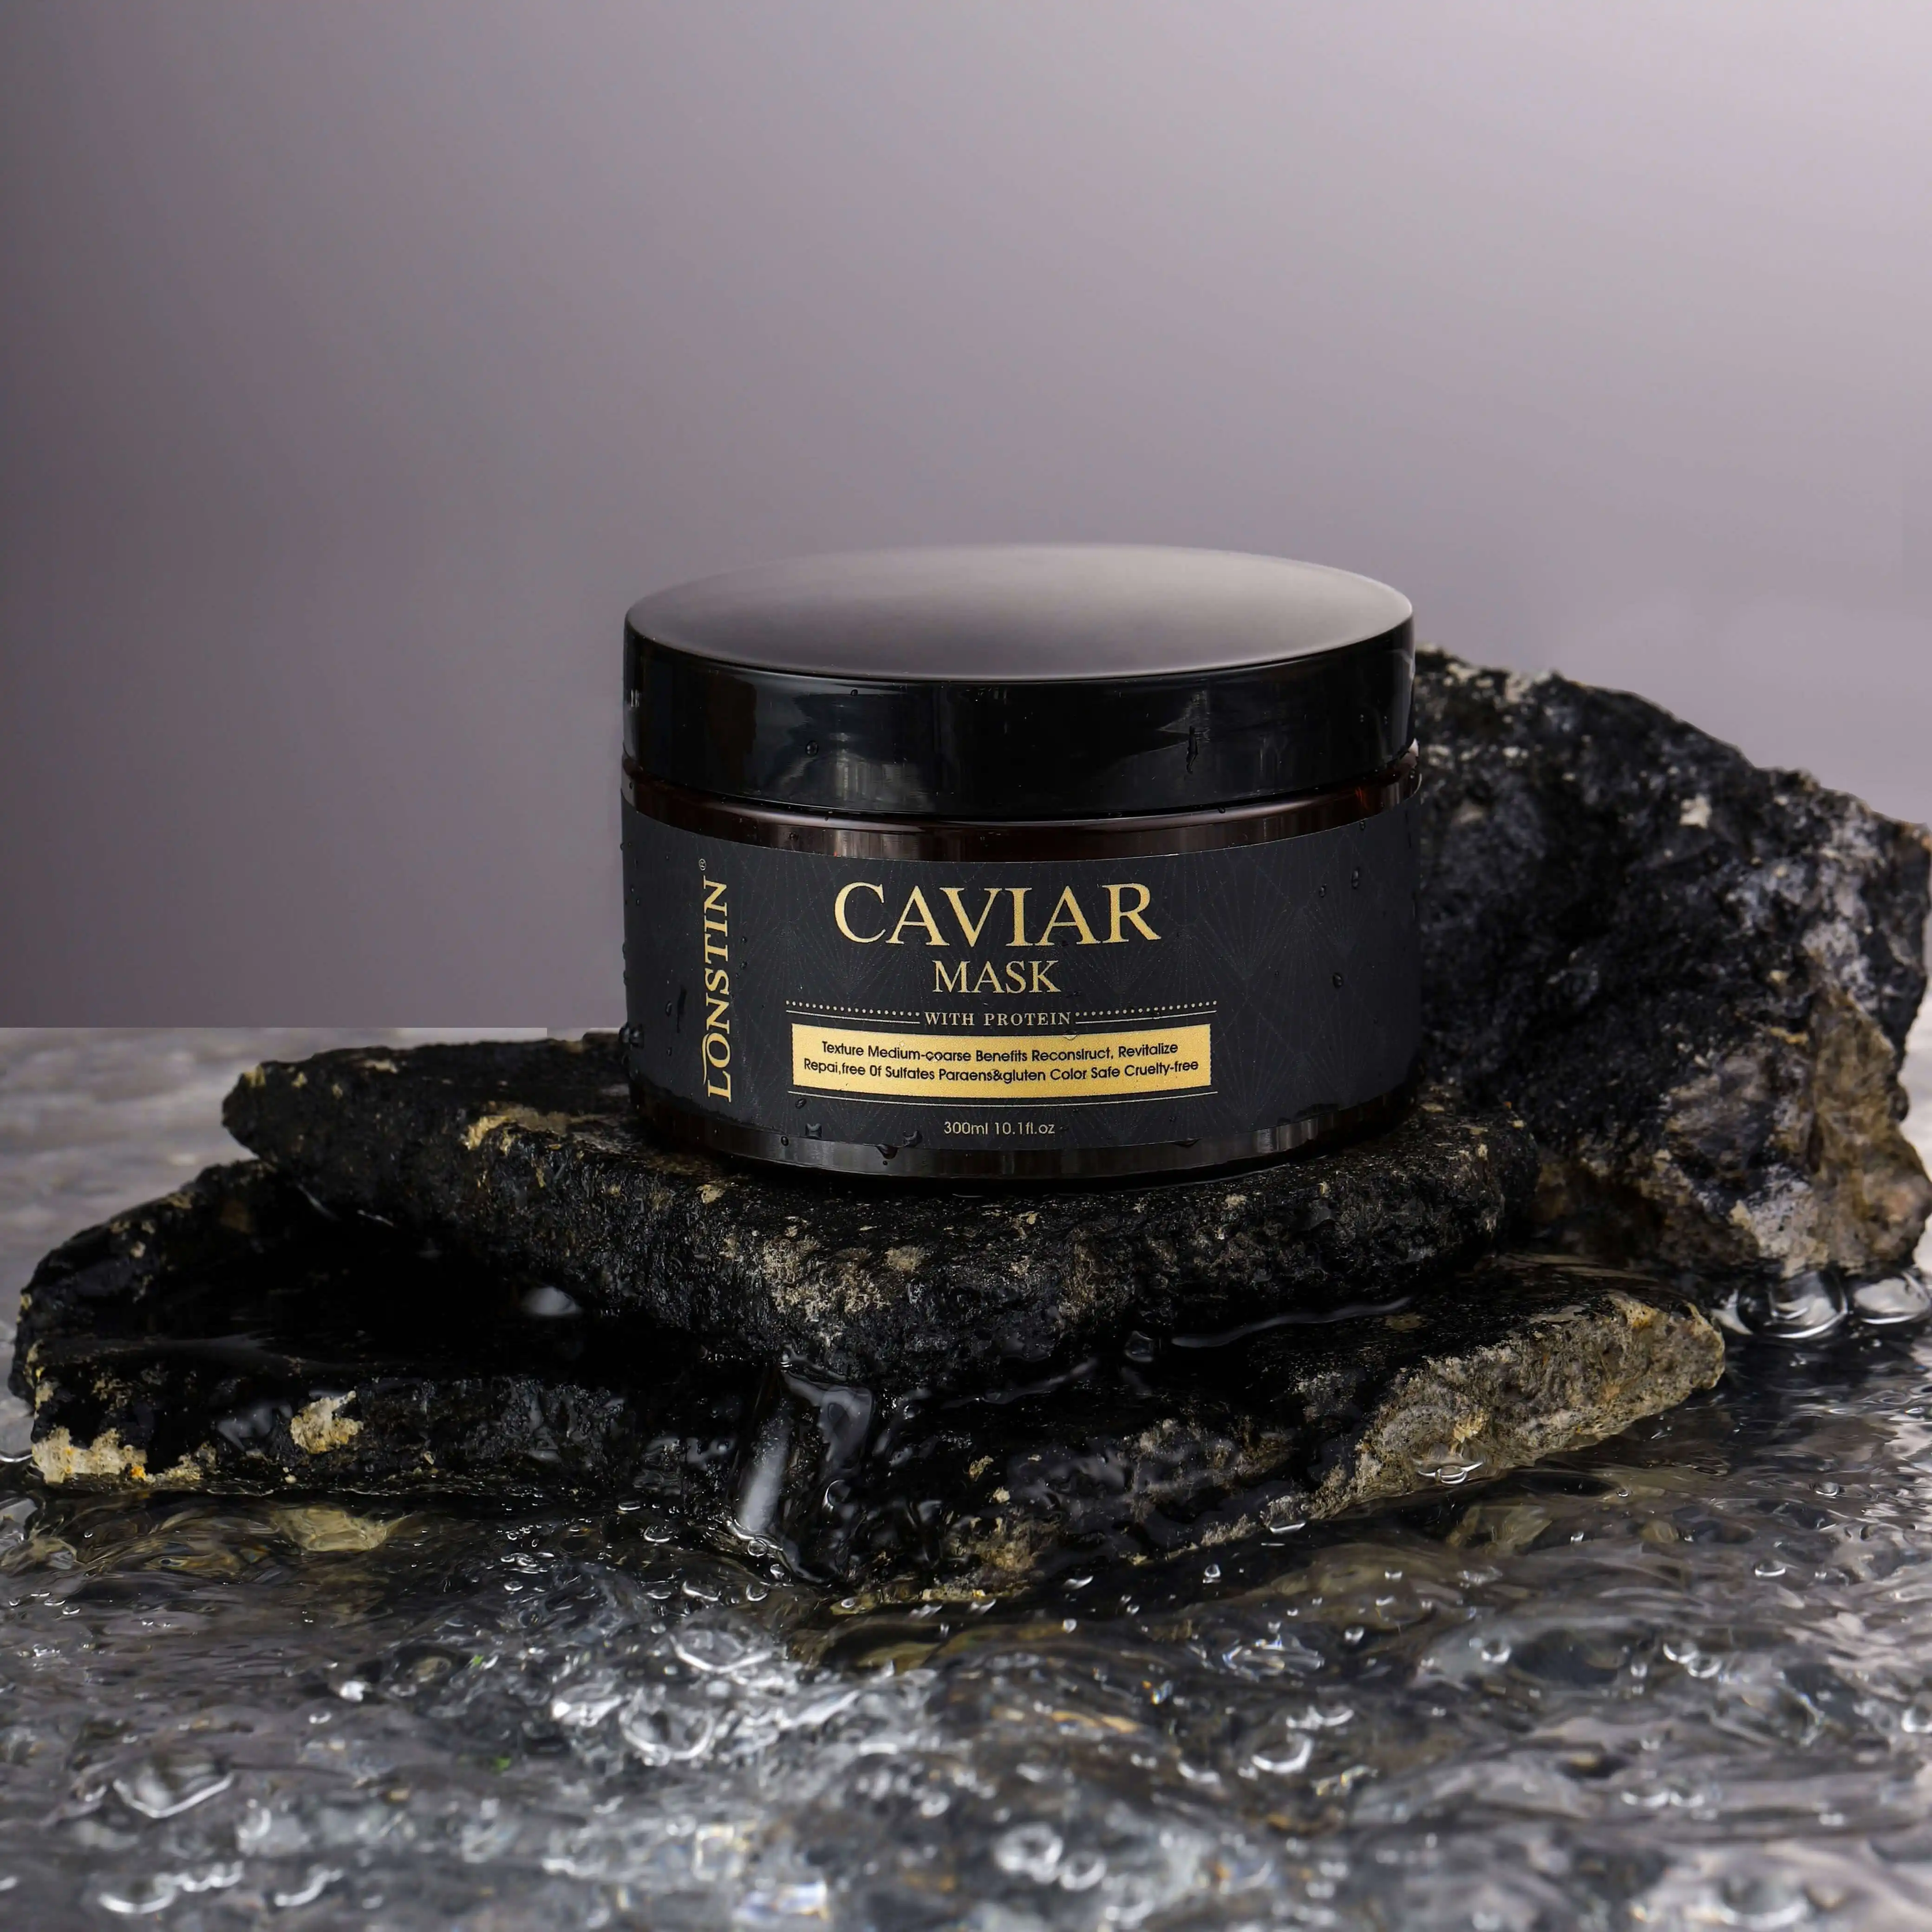 Logo de marque privée sérum bio réparateur produit de traitement des cheveux kératine bio maroc huile essentielle de cheveux argan caviar pour cheveux